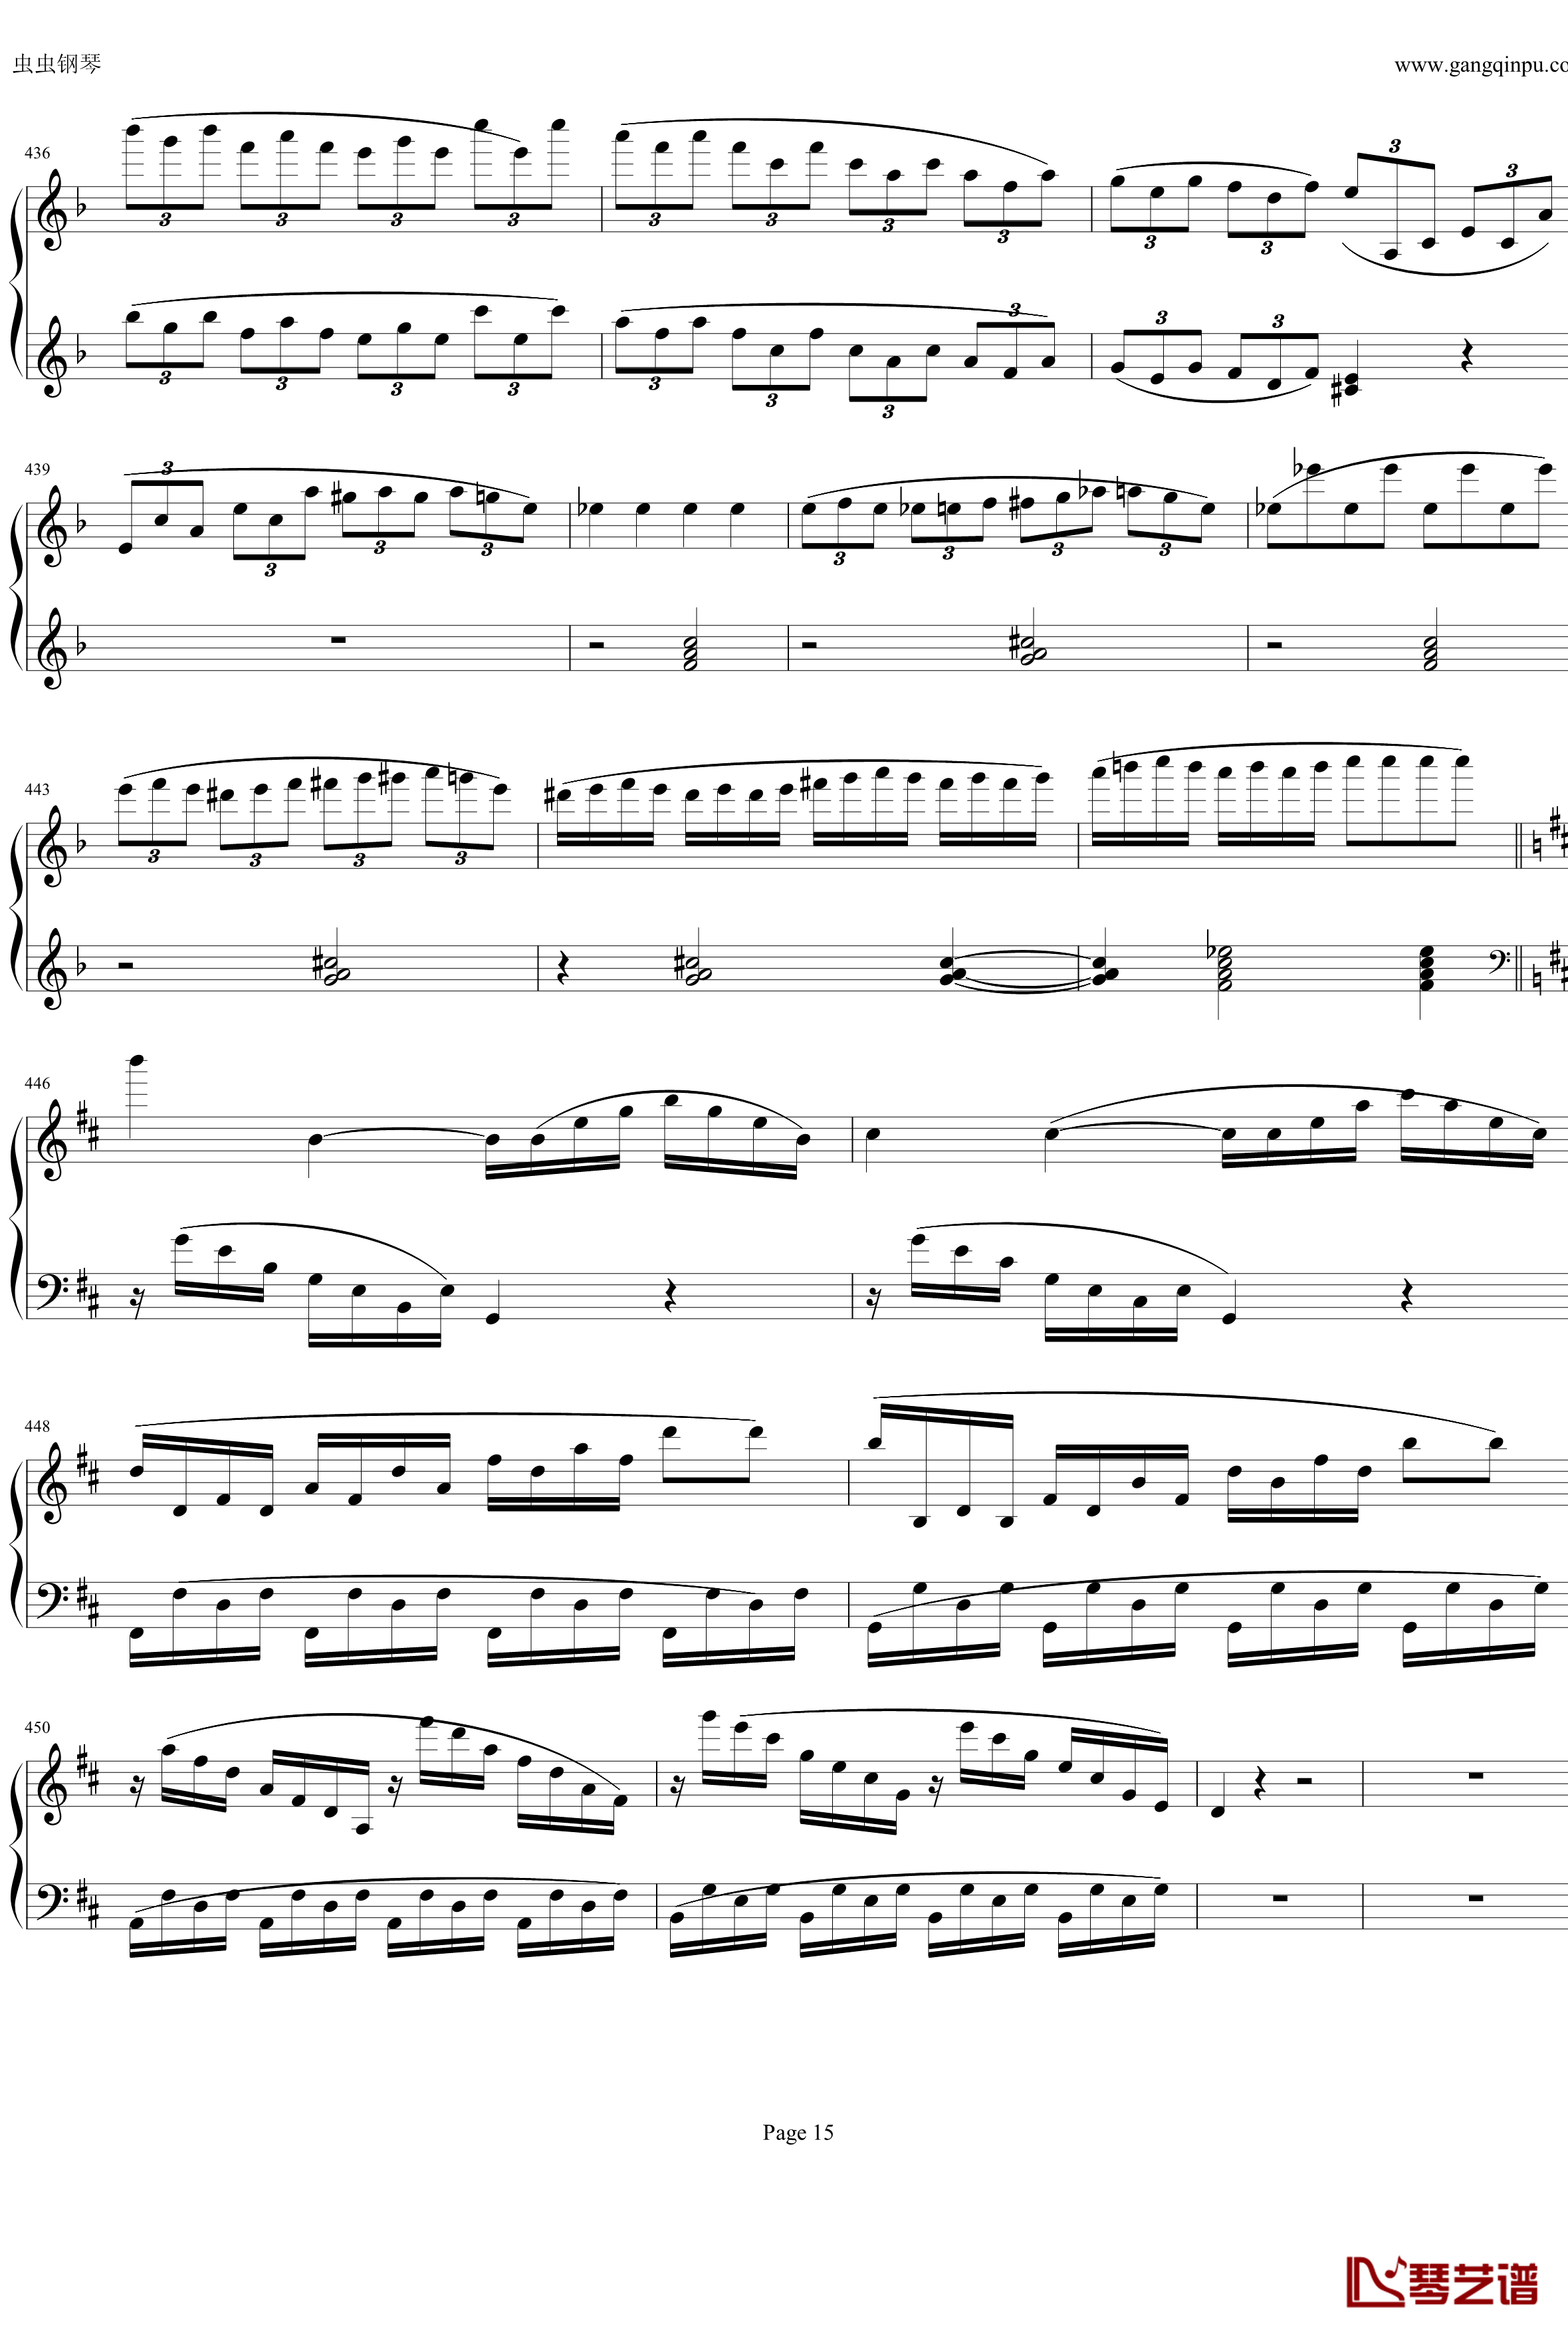 钢琴协奏曲Op61第一乐章钢琴谱-贝多芬-beethoven15